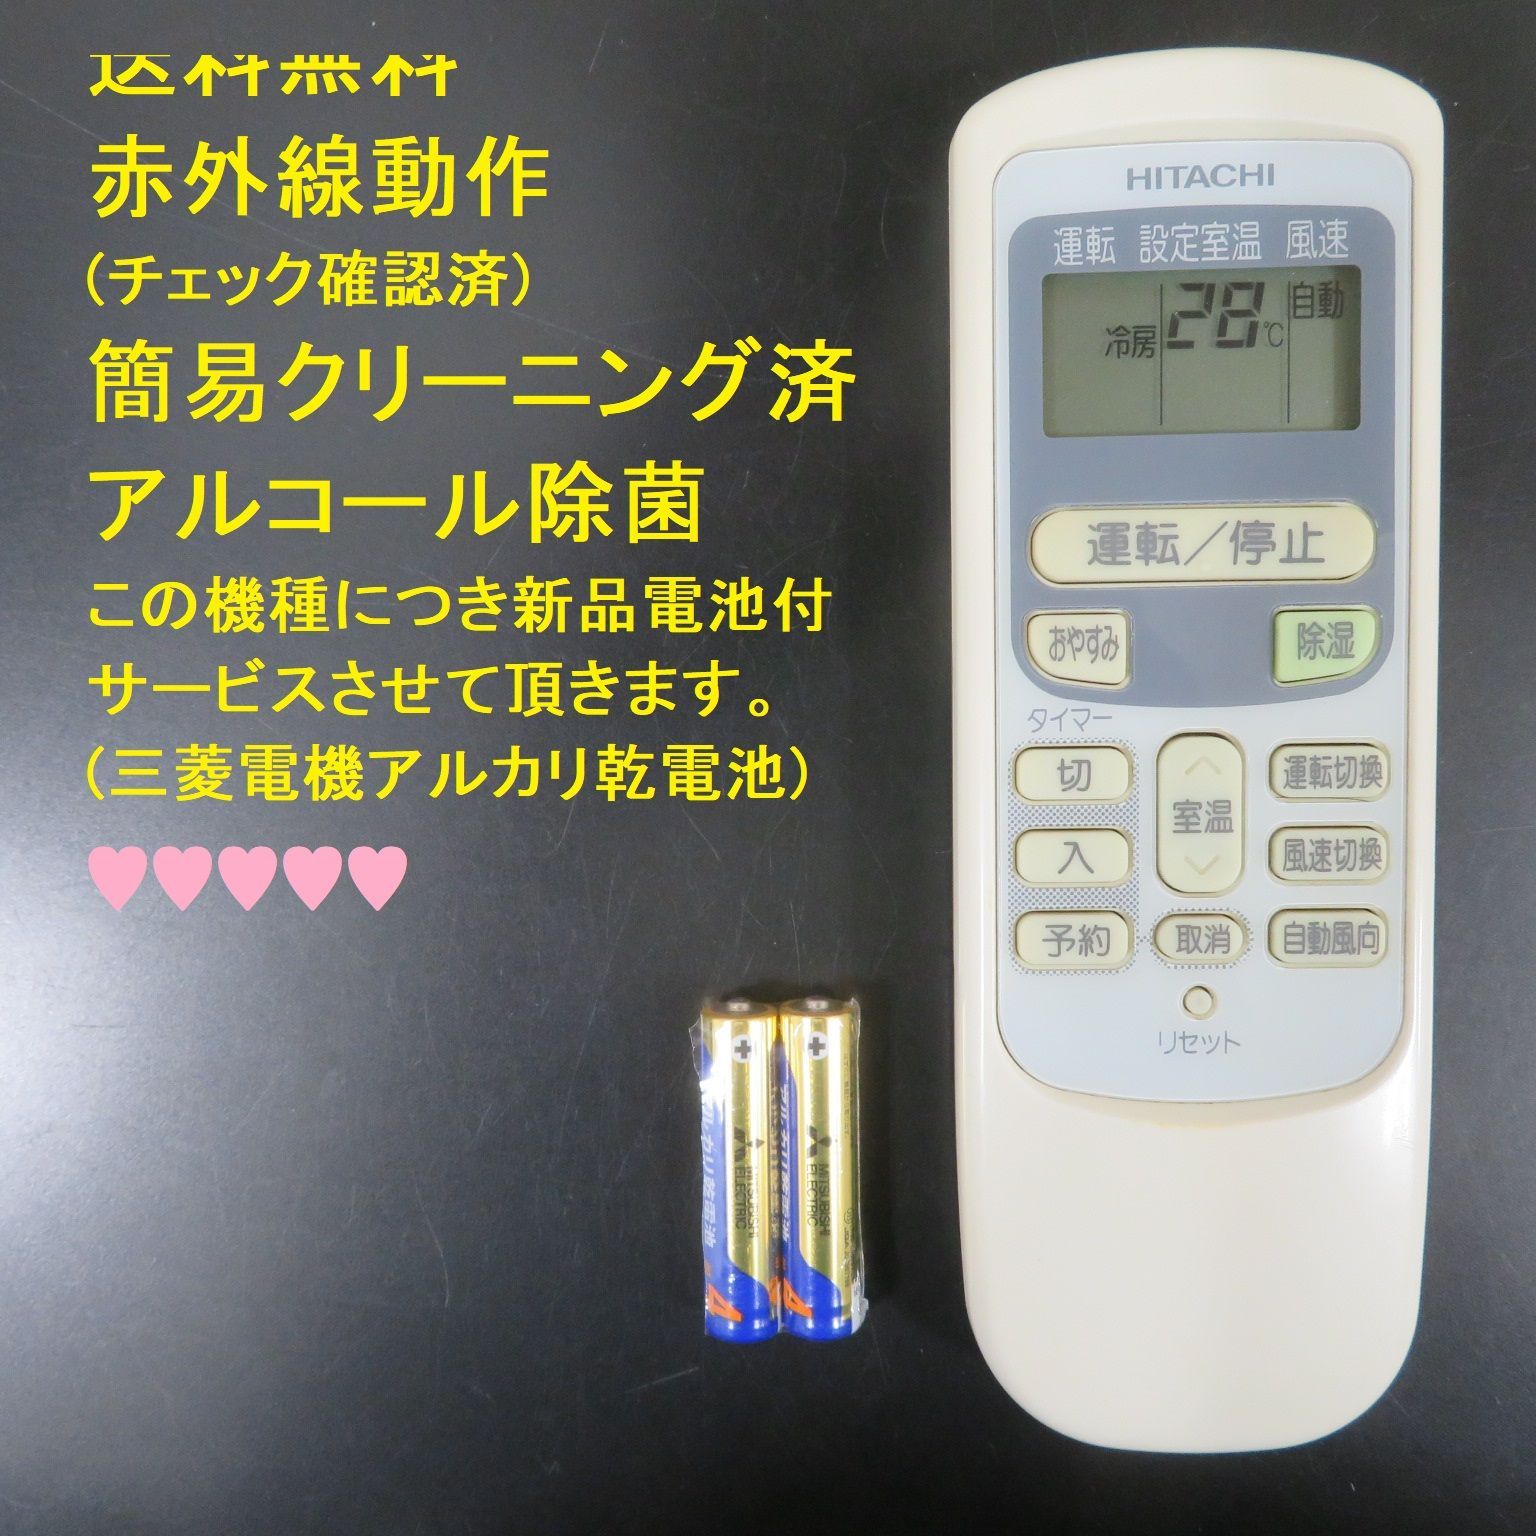 2882☆日立(HITACHI) エアコンリモコンRAR-2Q1■新品電池付